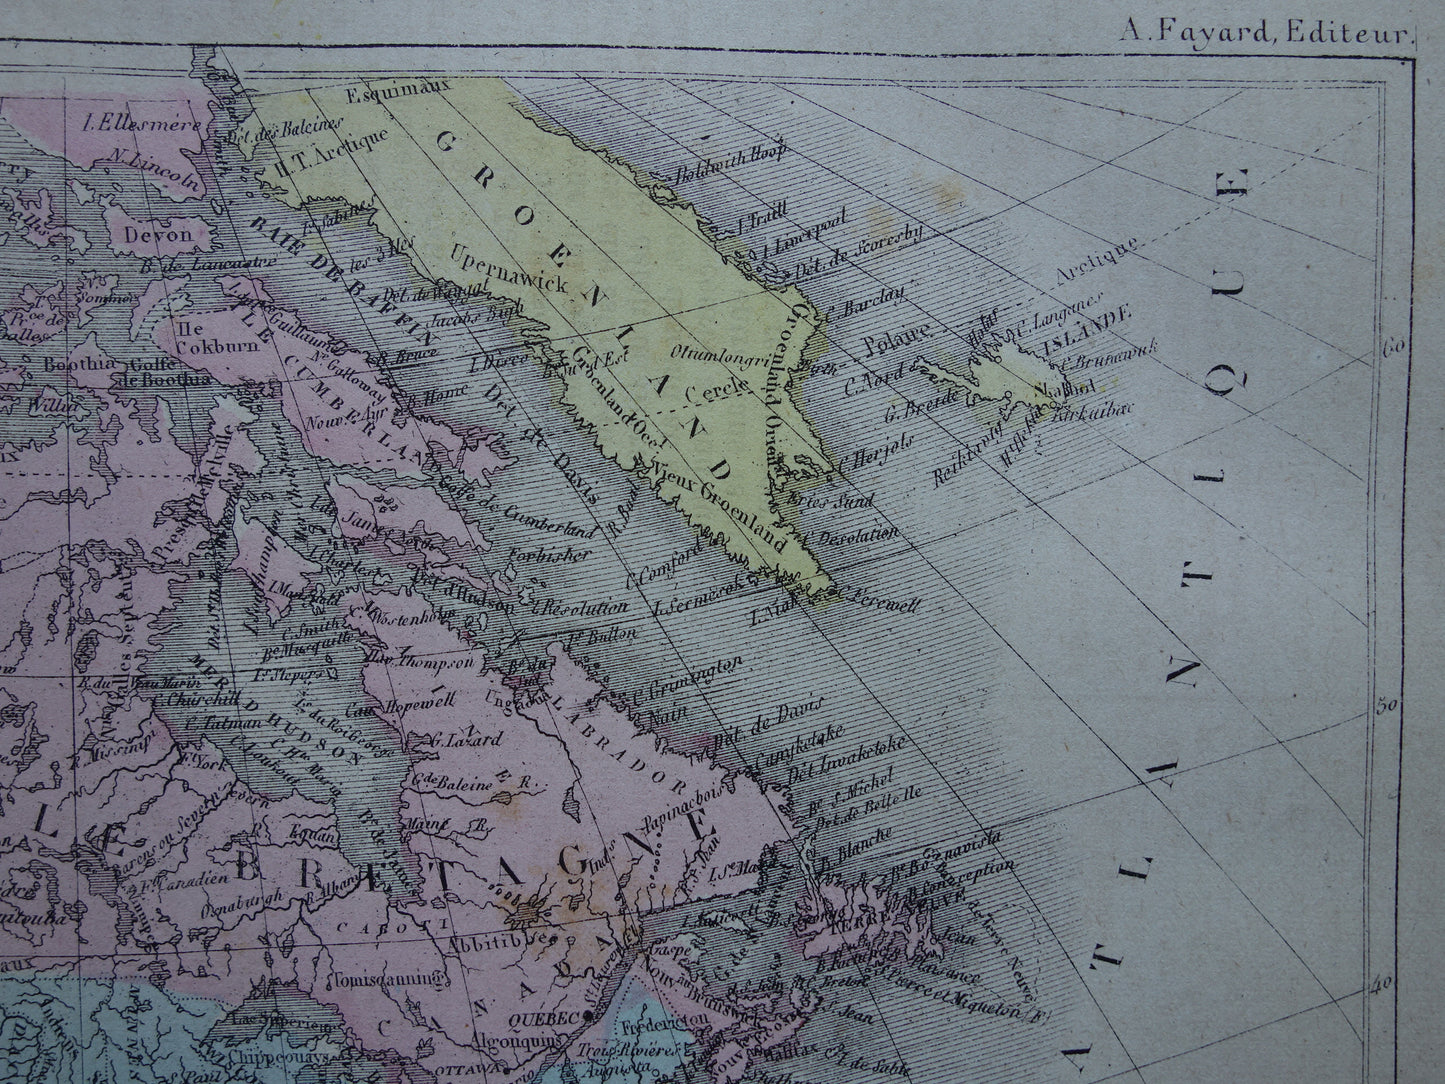 NOORD-AMERIKA Oude kaart van Verenigde Staten Canada Mexico Originele antieke handgekleurde landkaart continent